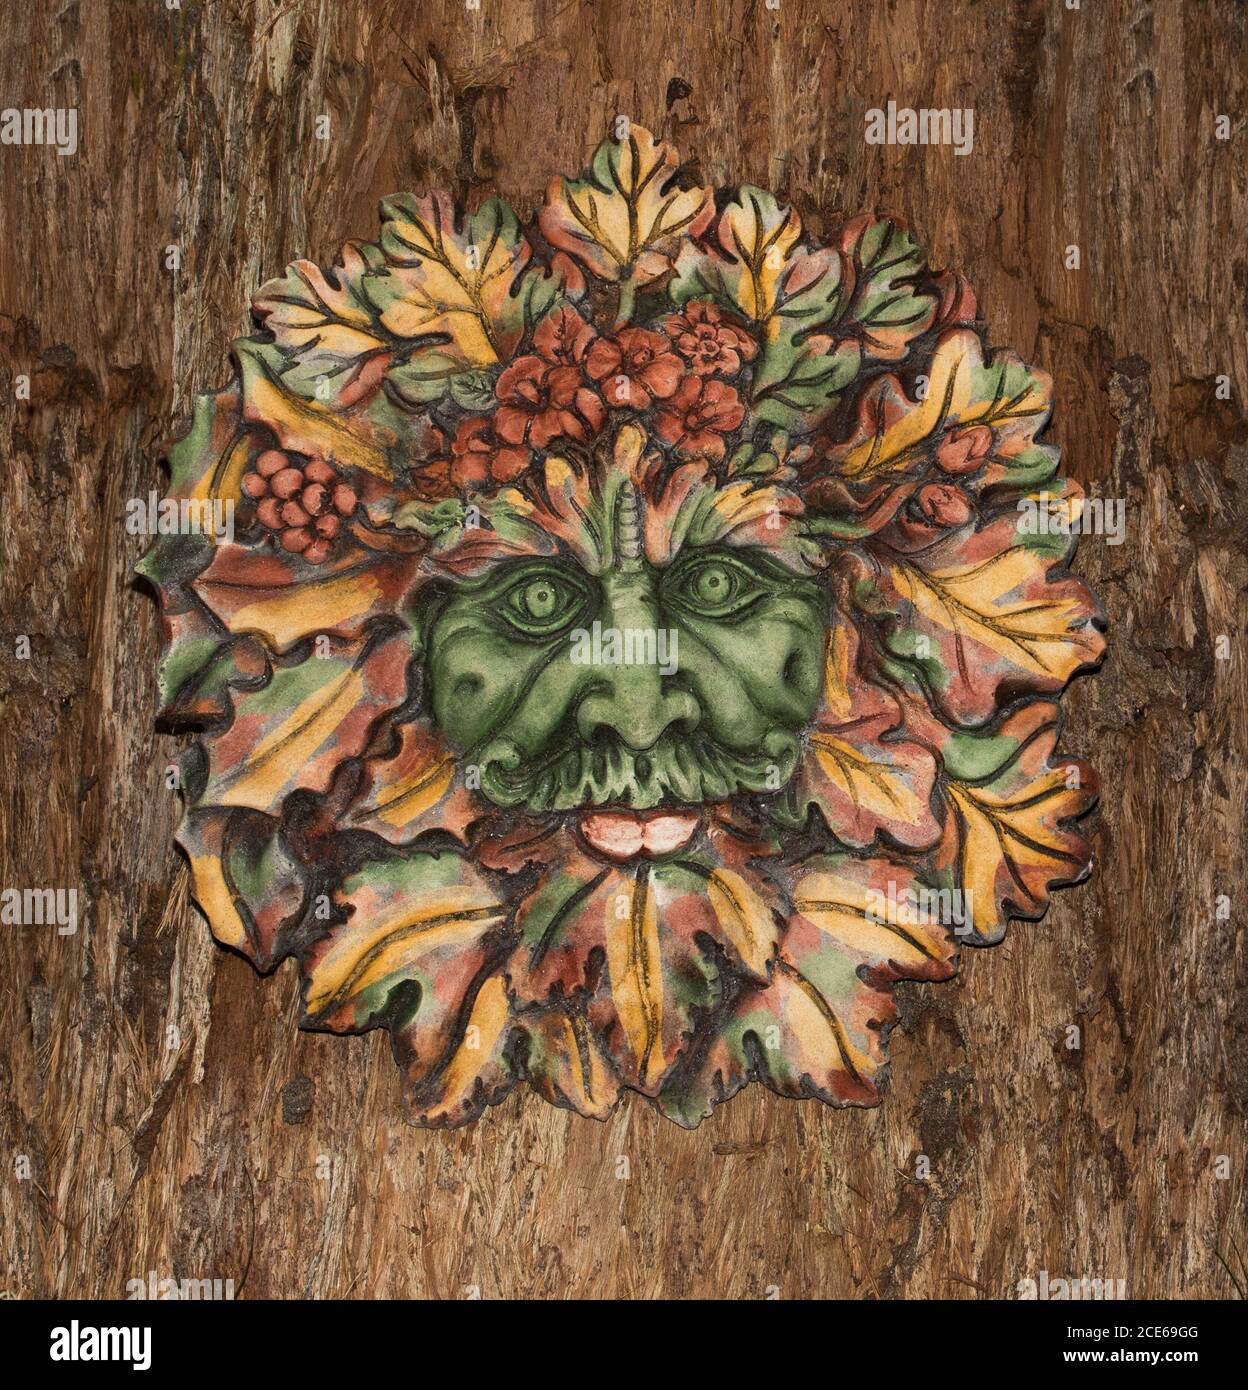 Art de jardin en béton très décoratif, face des feuilles d'automne de Green Man, esprit mythique britannique des forêts, sur fond d'écorce d'arbre brun Banque D'Images